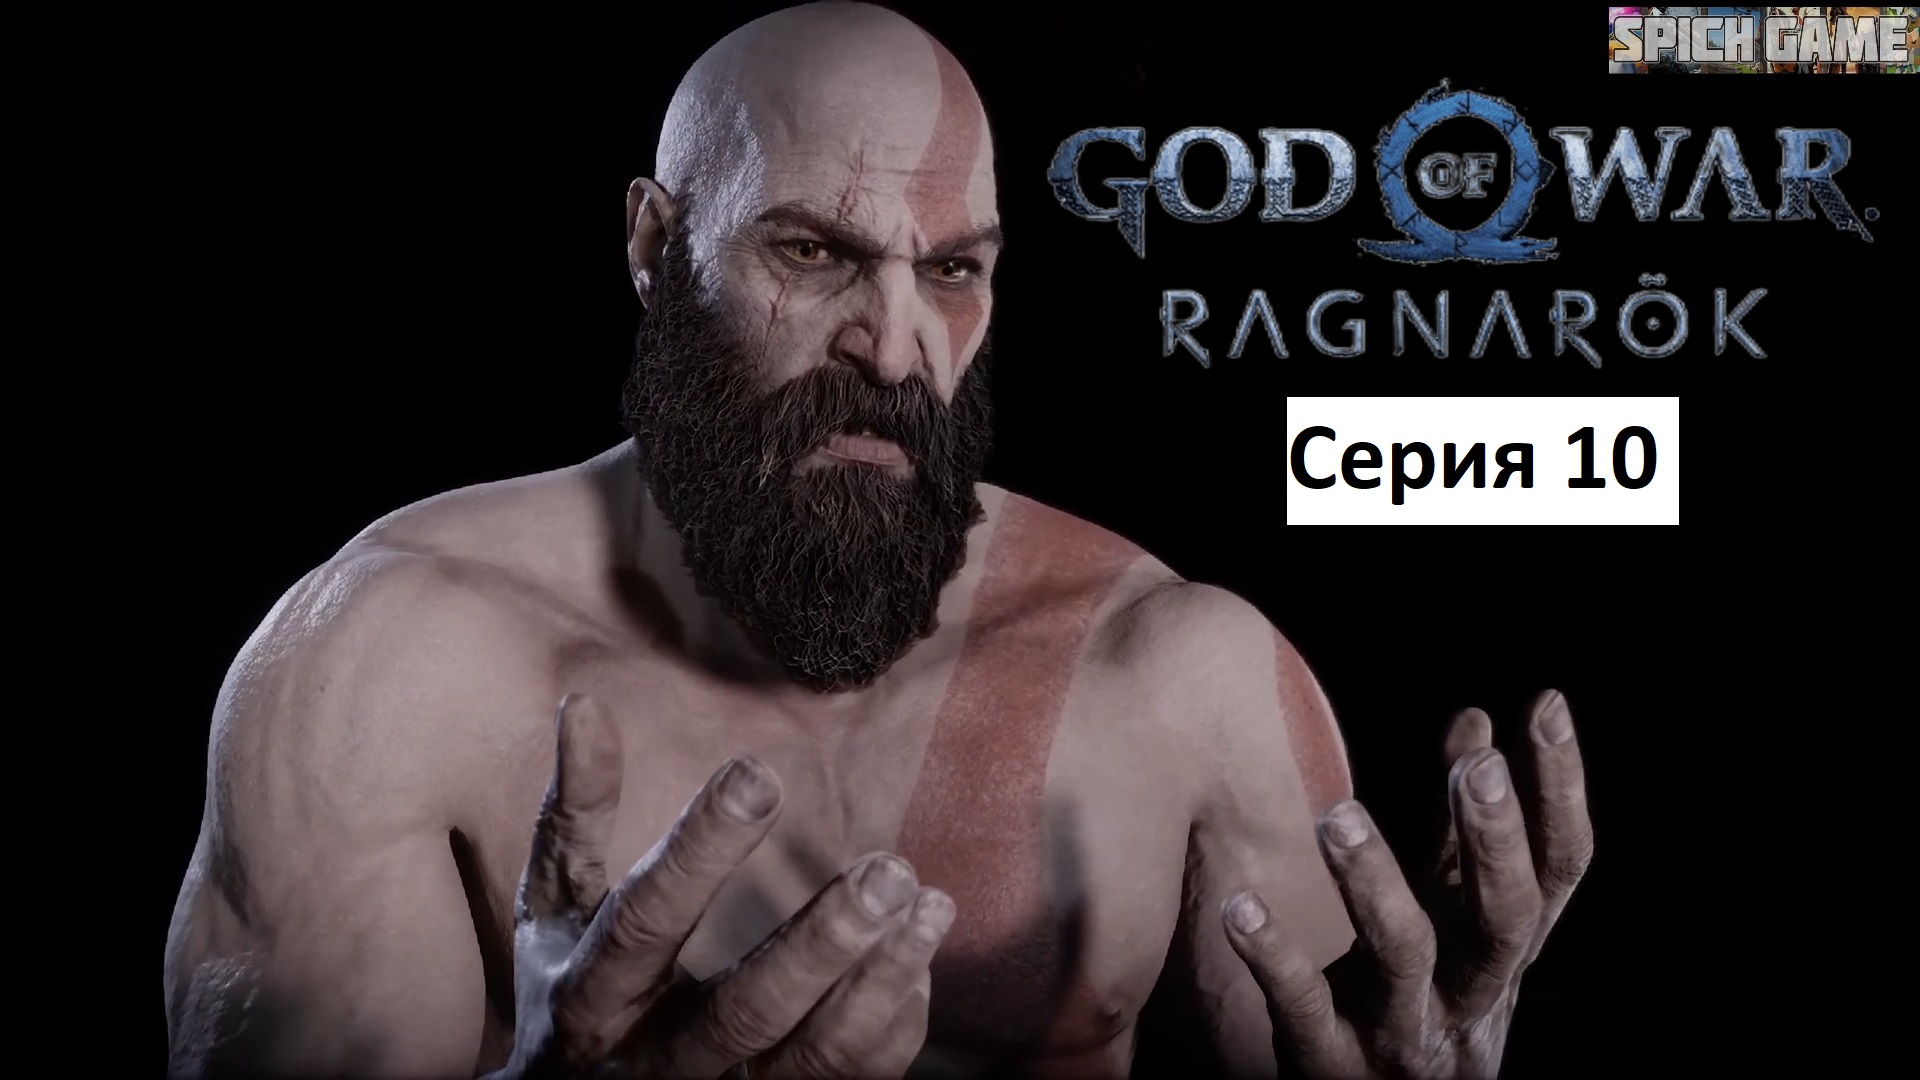 God of War Ragnarok Игрофильм на русском ● Сюжет без лишнего геймплея ● SpiCH GAME Серия 10